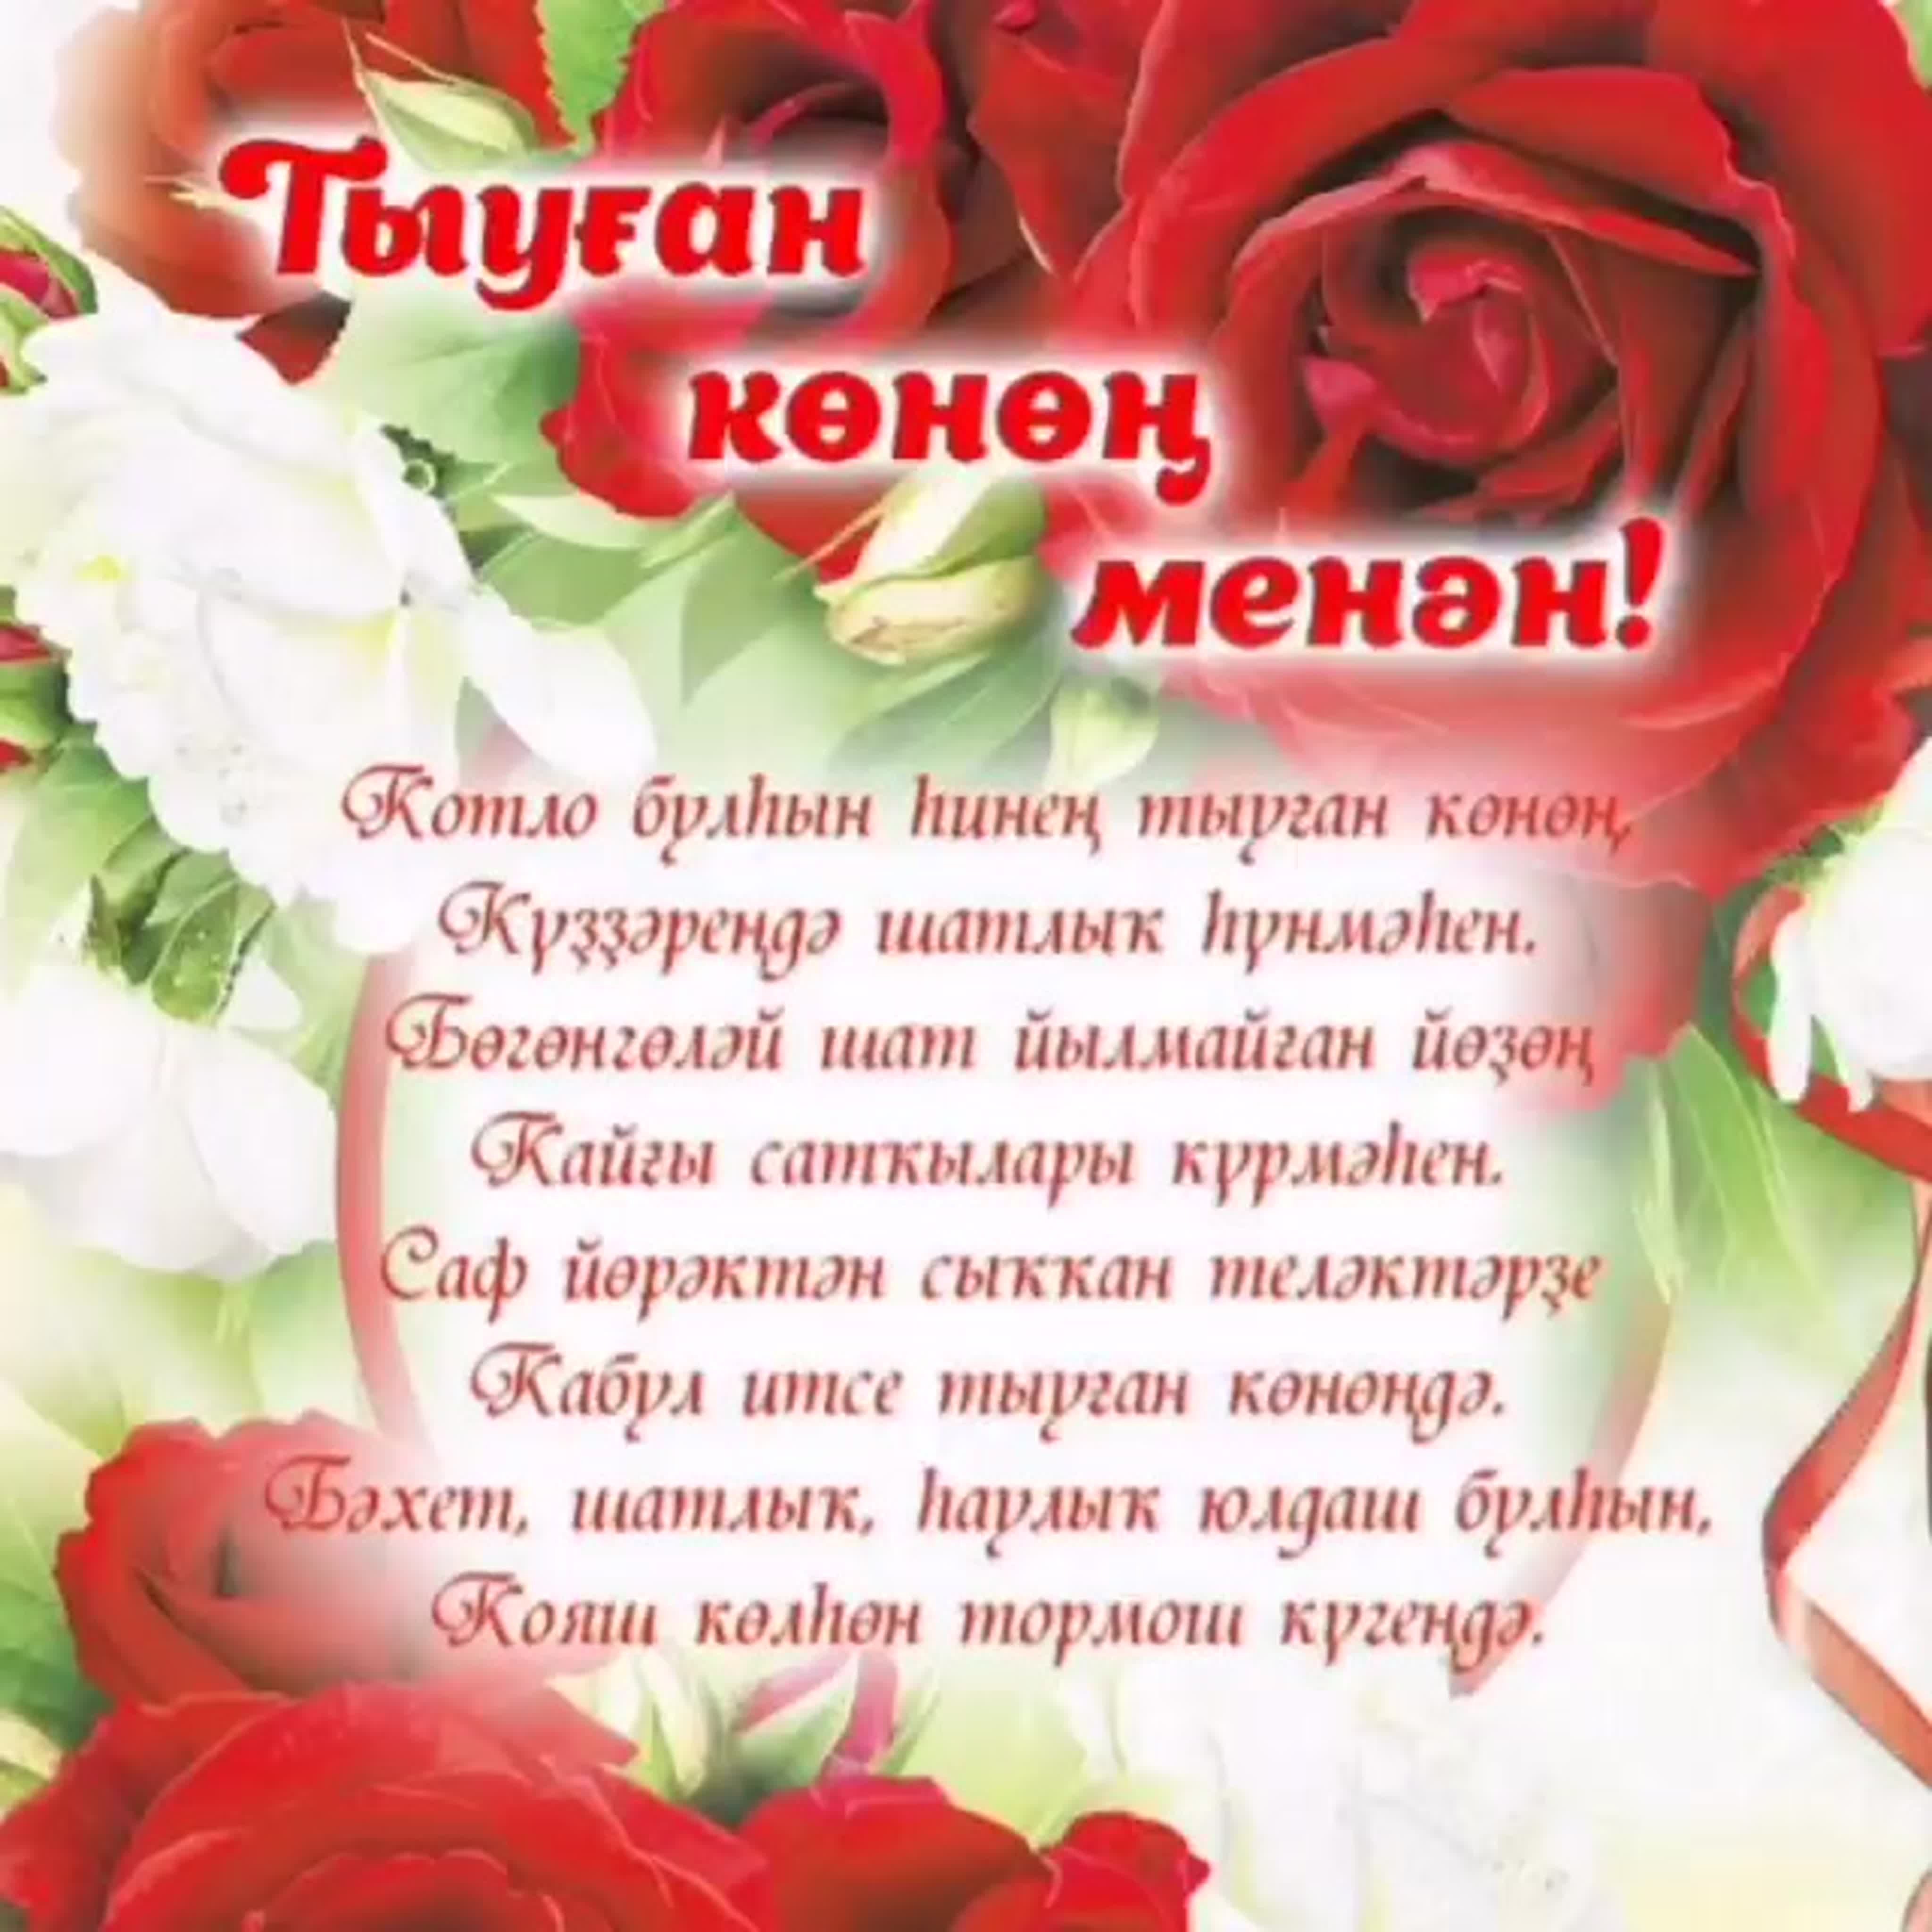 С днем рождения на татарском 55. Поздравления на башкирском языке. Поздравления с днём рождения на башкирском языке. Поздравление на татарском языке. Поздравления с днём рождения женщине на башкирском языке.